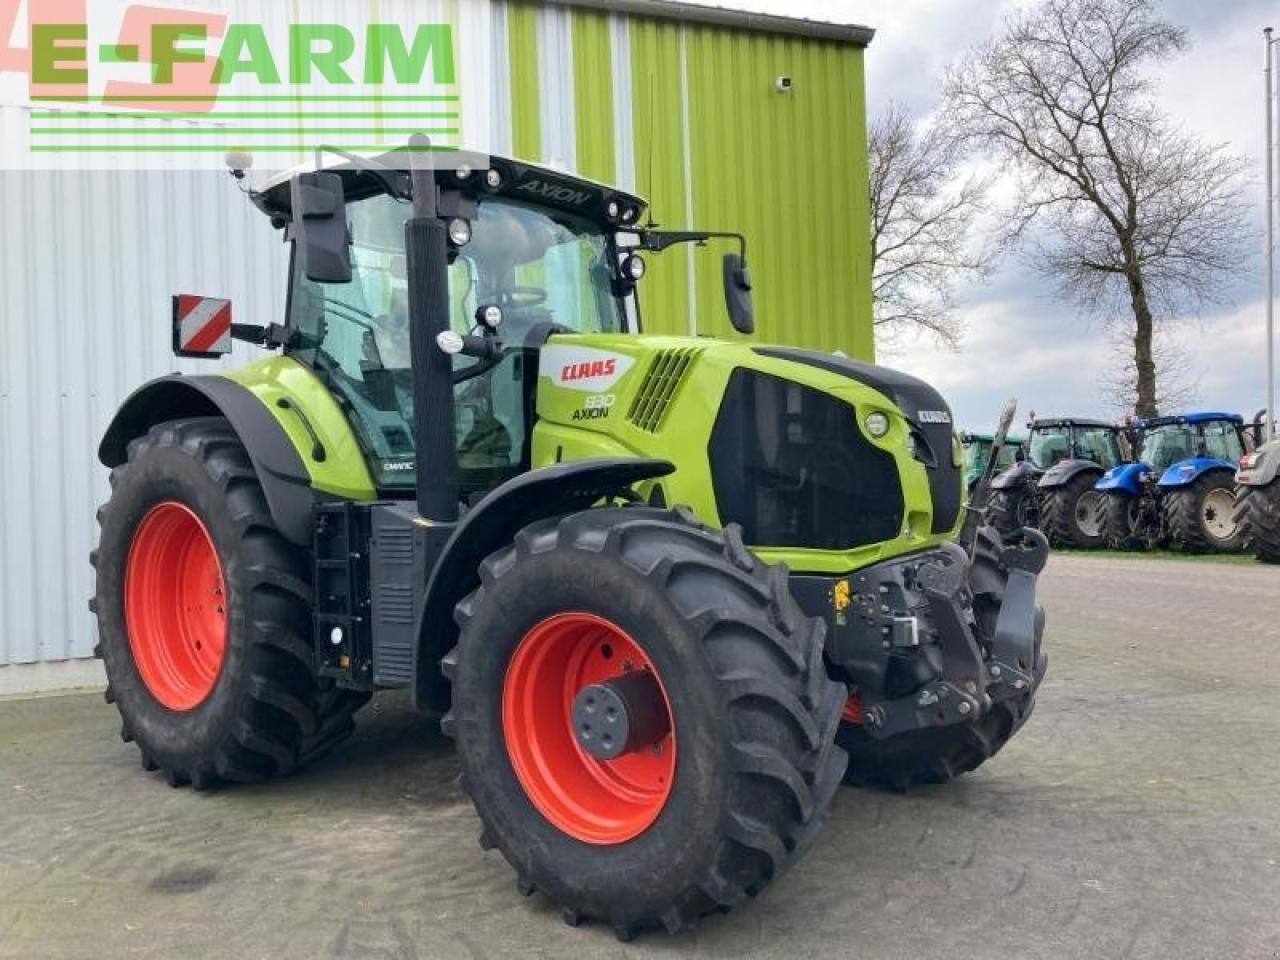 Farm tractor CLAAS axion 830